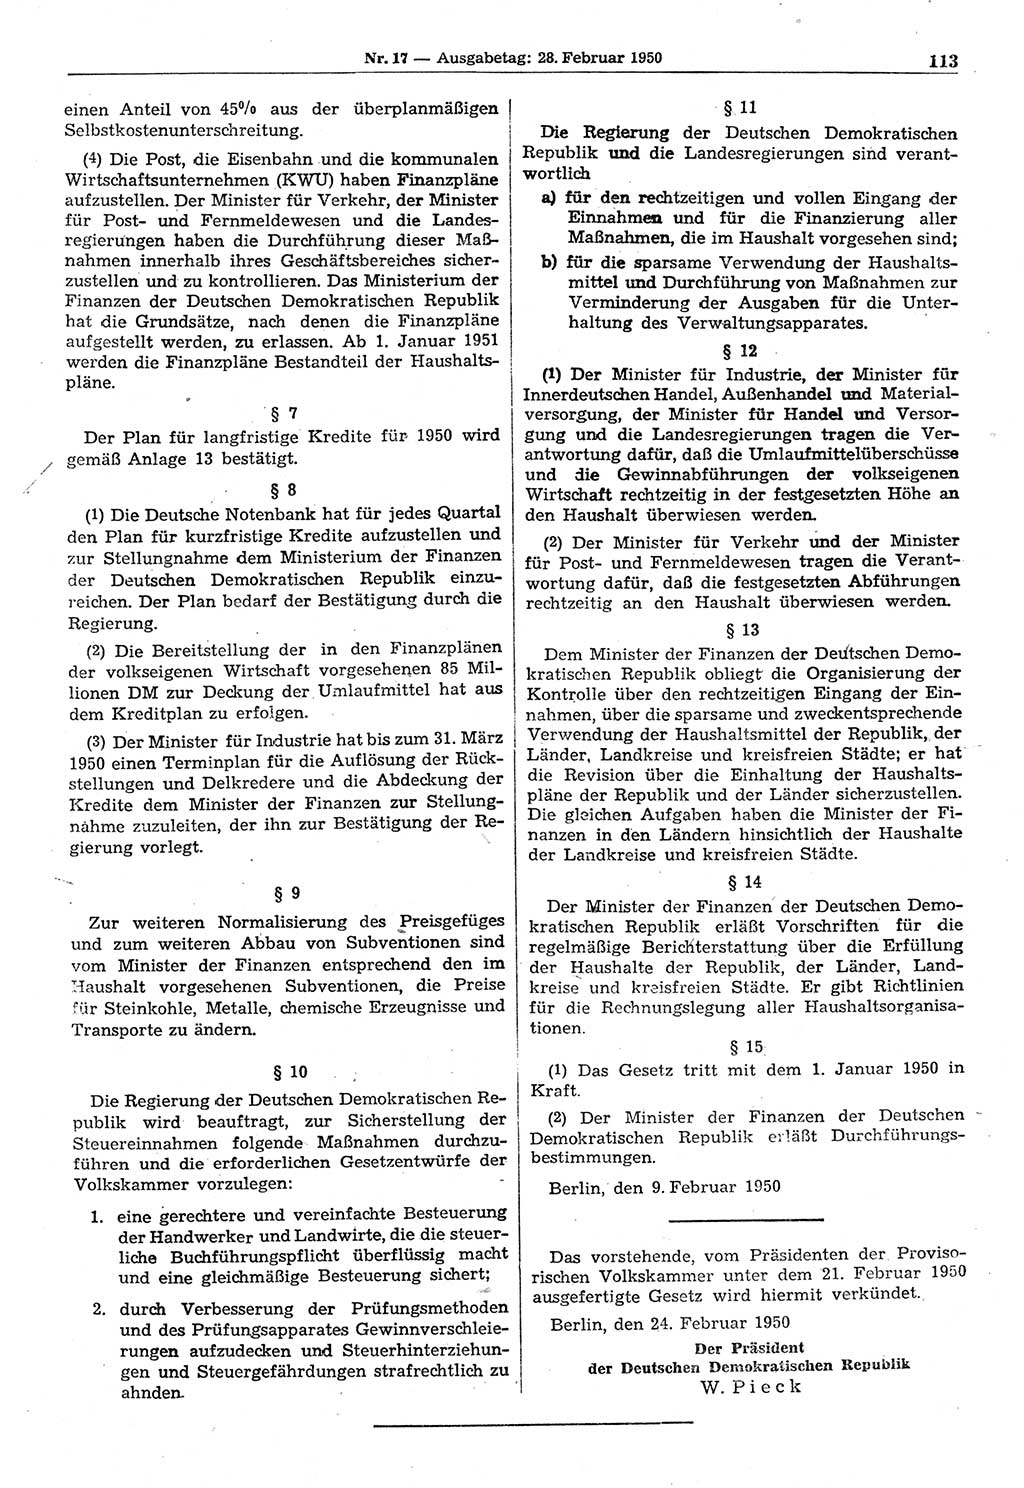 Gesetzblatt (GBl.) der Deutschen Demokratischen Republik (DDR) 1950, Seite 113 (GBl. DDR 1950, S. 113)